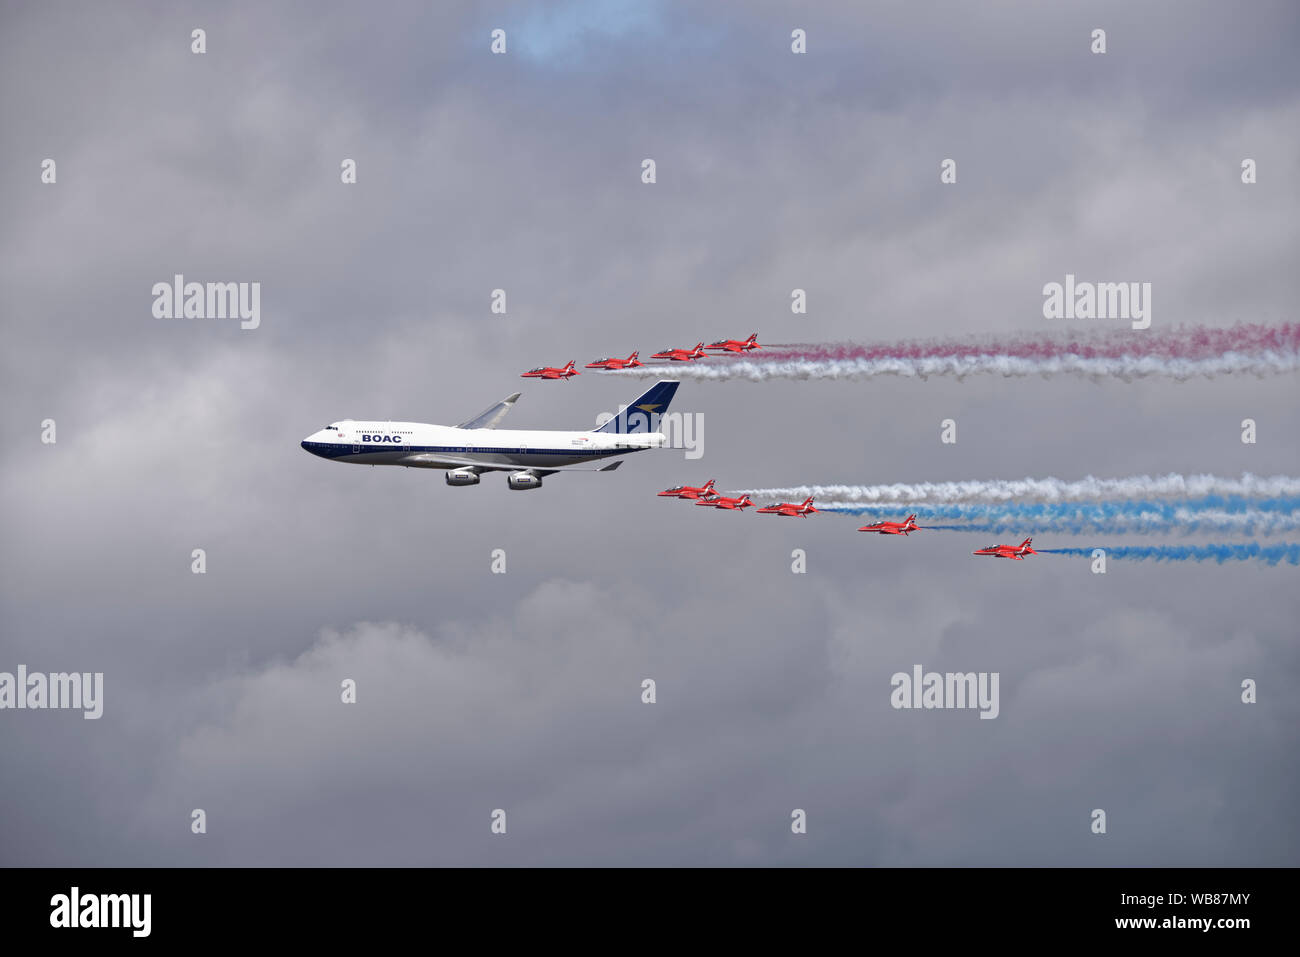 Il British frecce rosse aerobatic team display celebrare British Airways centesimo compleanno con un flypast in formazione con un BOAC Boeing 747 aereo di linea Foto Stock